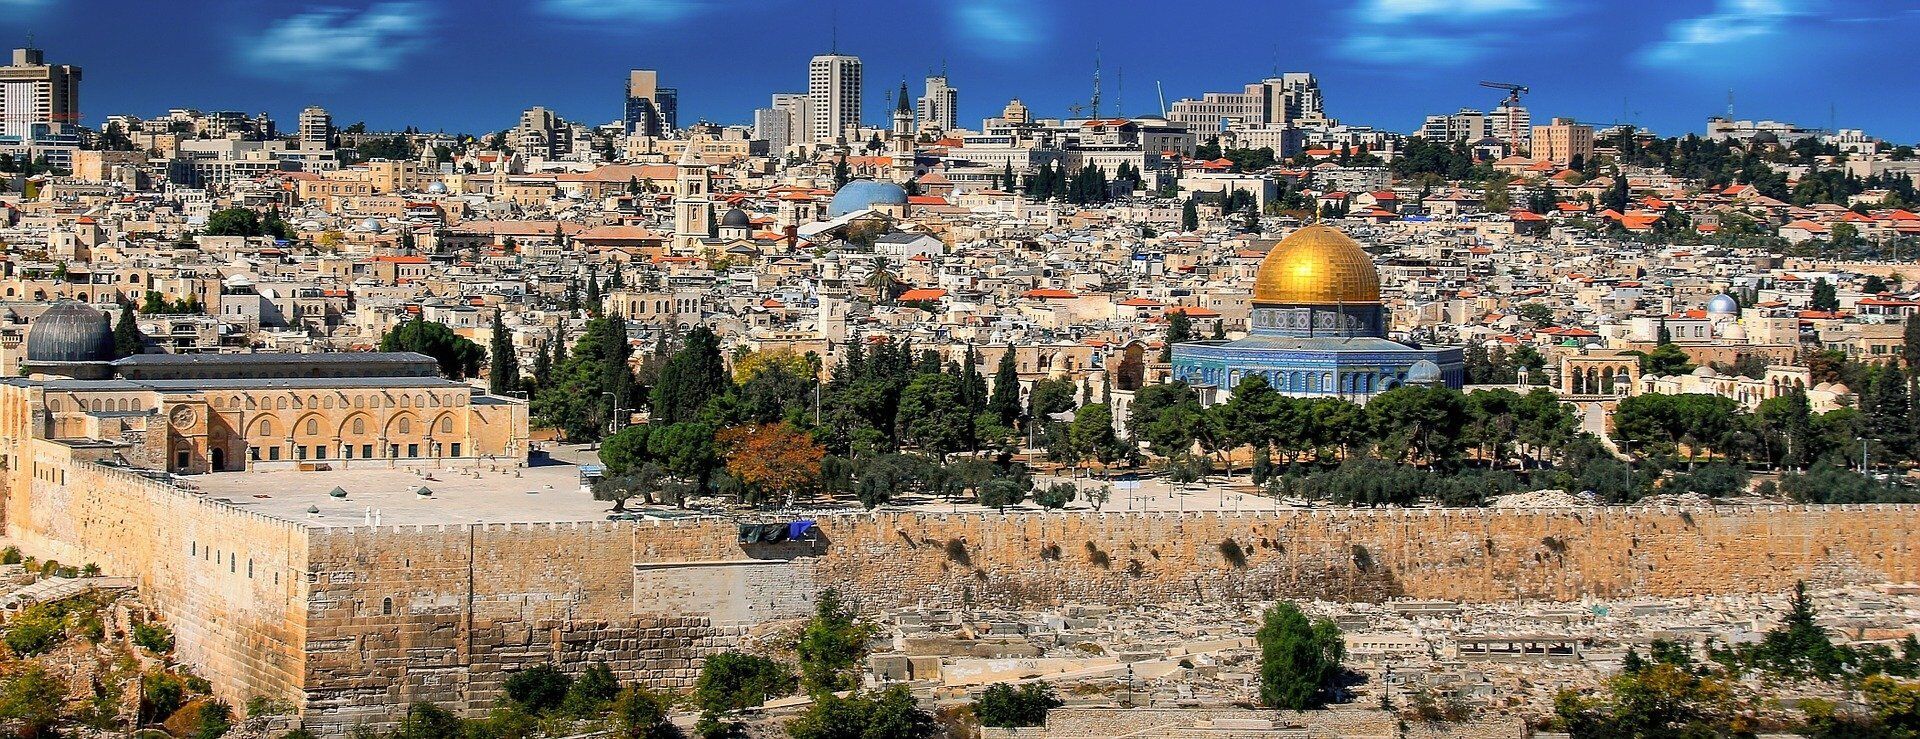 Иерусалим привлекает многих паломников.